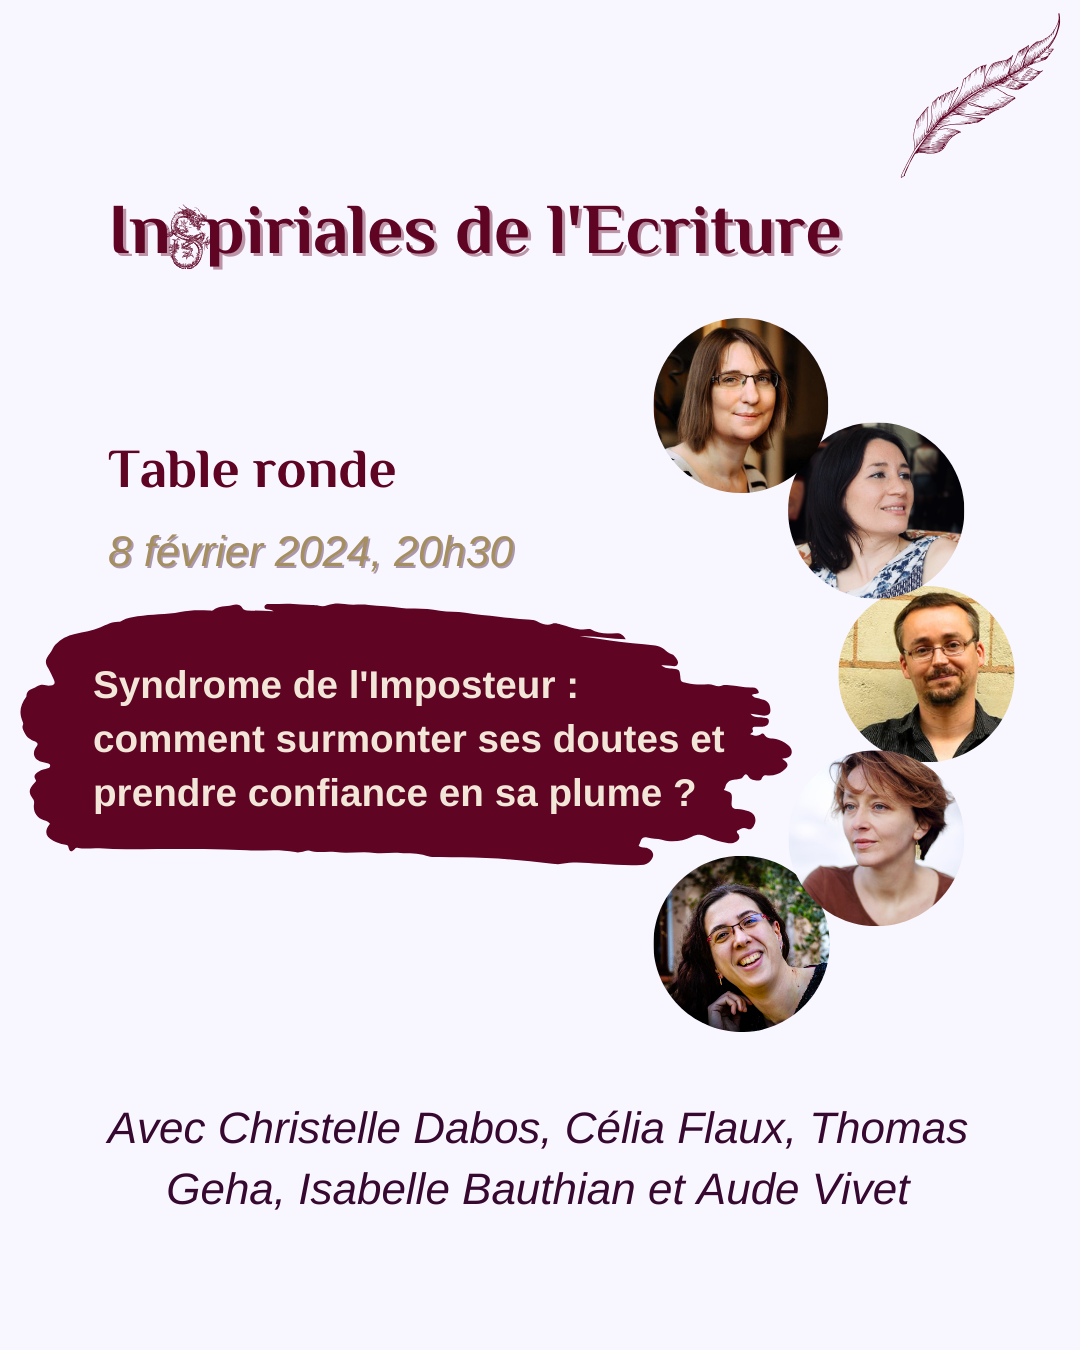 Table ronde des 3èmes Inspiriales de l'Ecriture - Christelle Dabos, Célia Flaux, Thomas Geha, Isabelle Bauthian et Aude Vivet